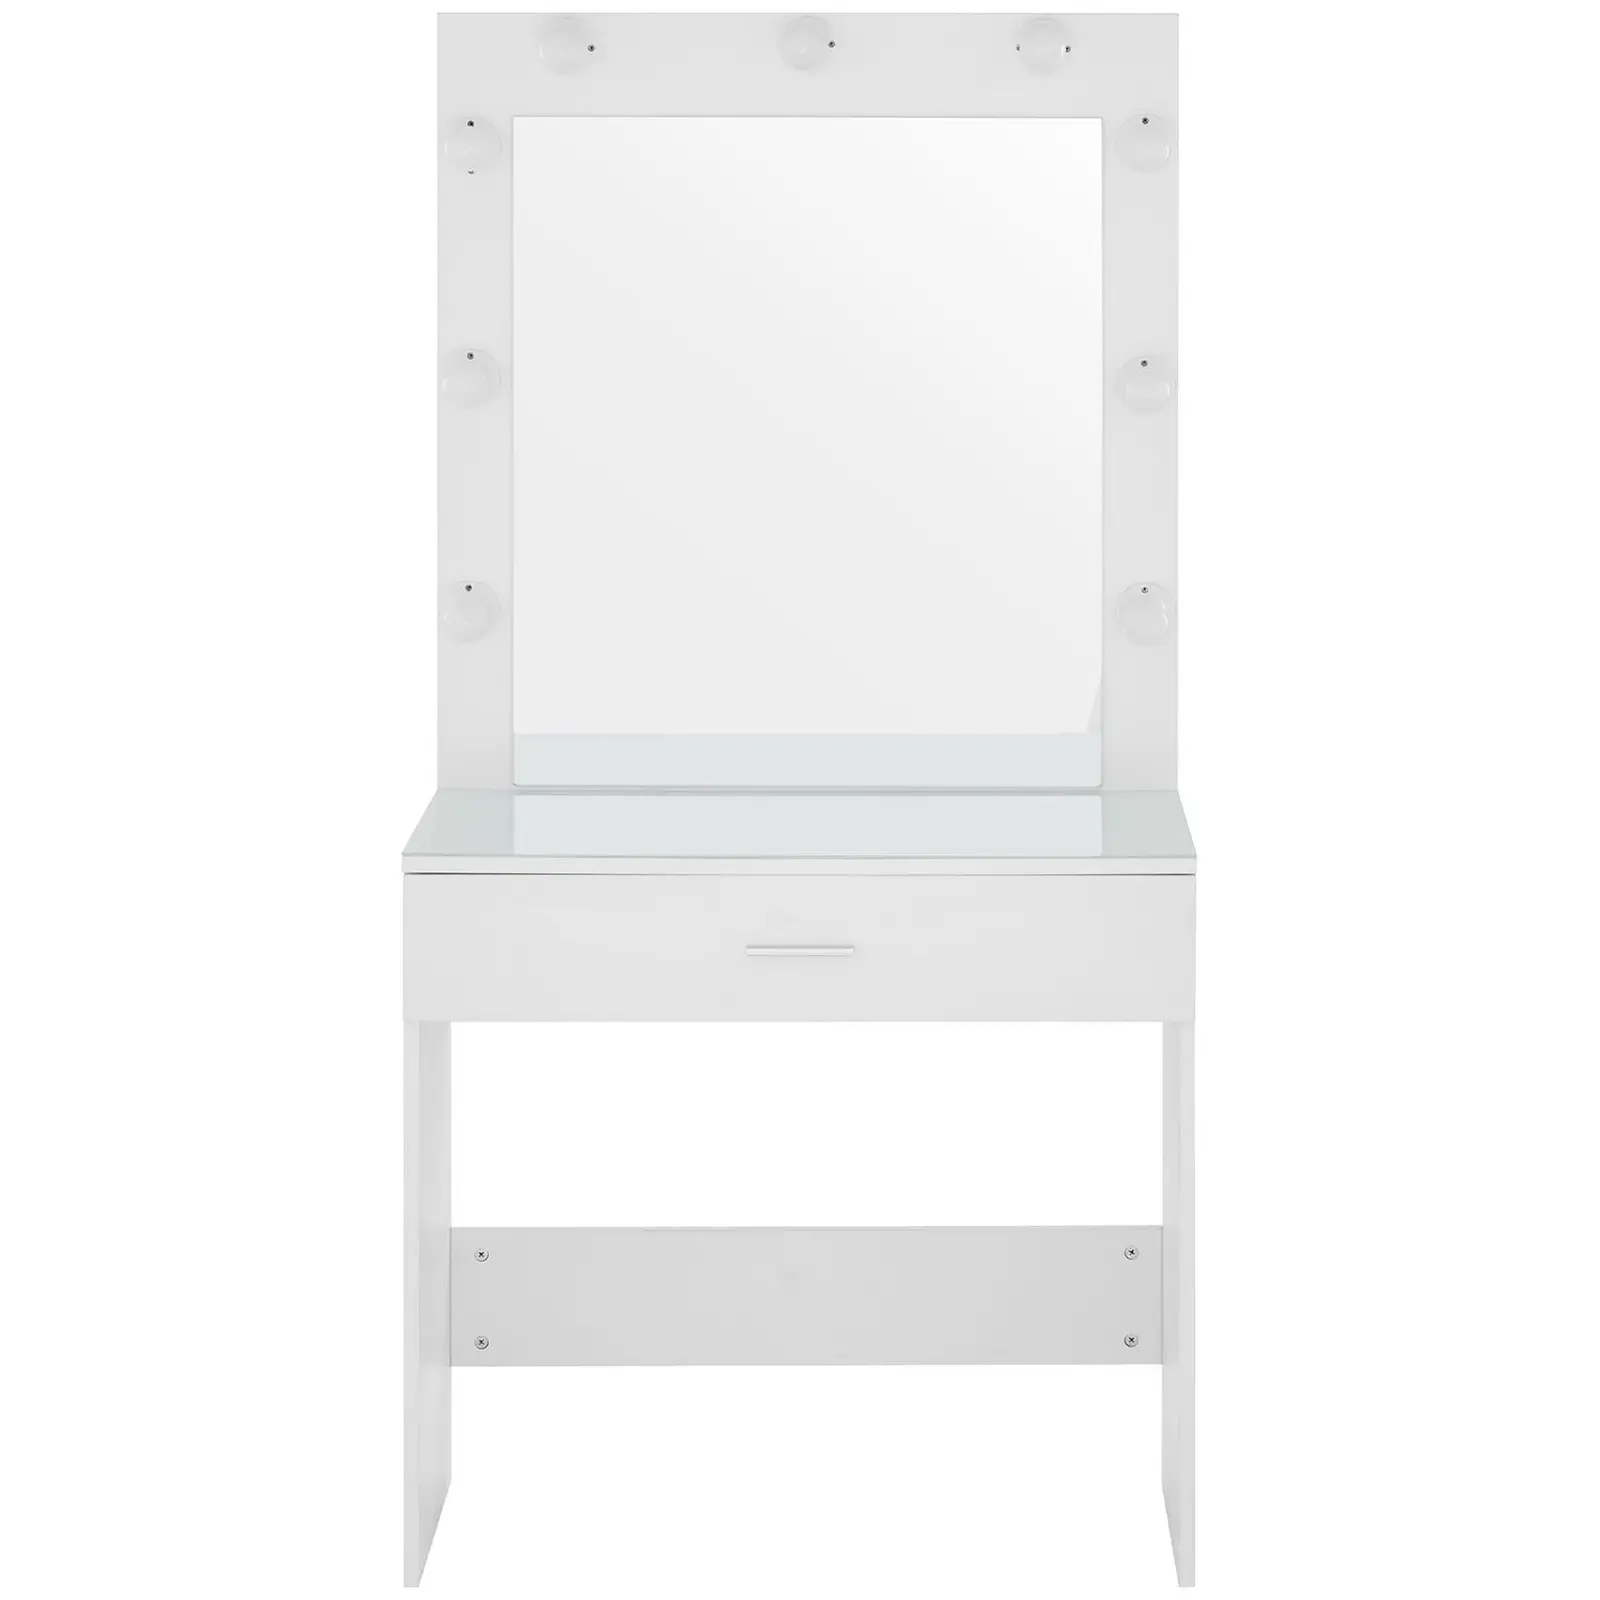 Sminkebord med speil og lys - 80 x 40 x 161 cm - hvit